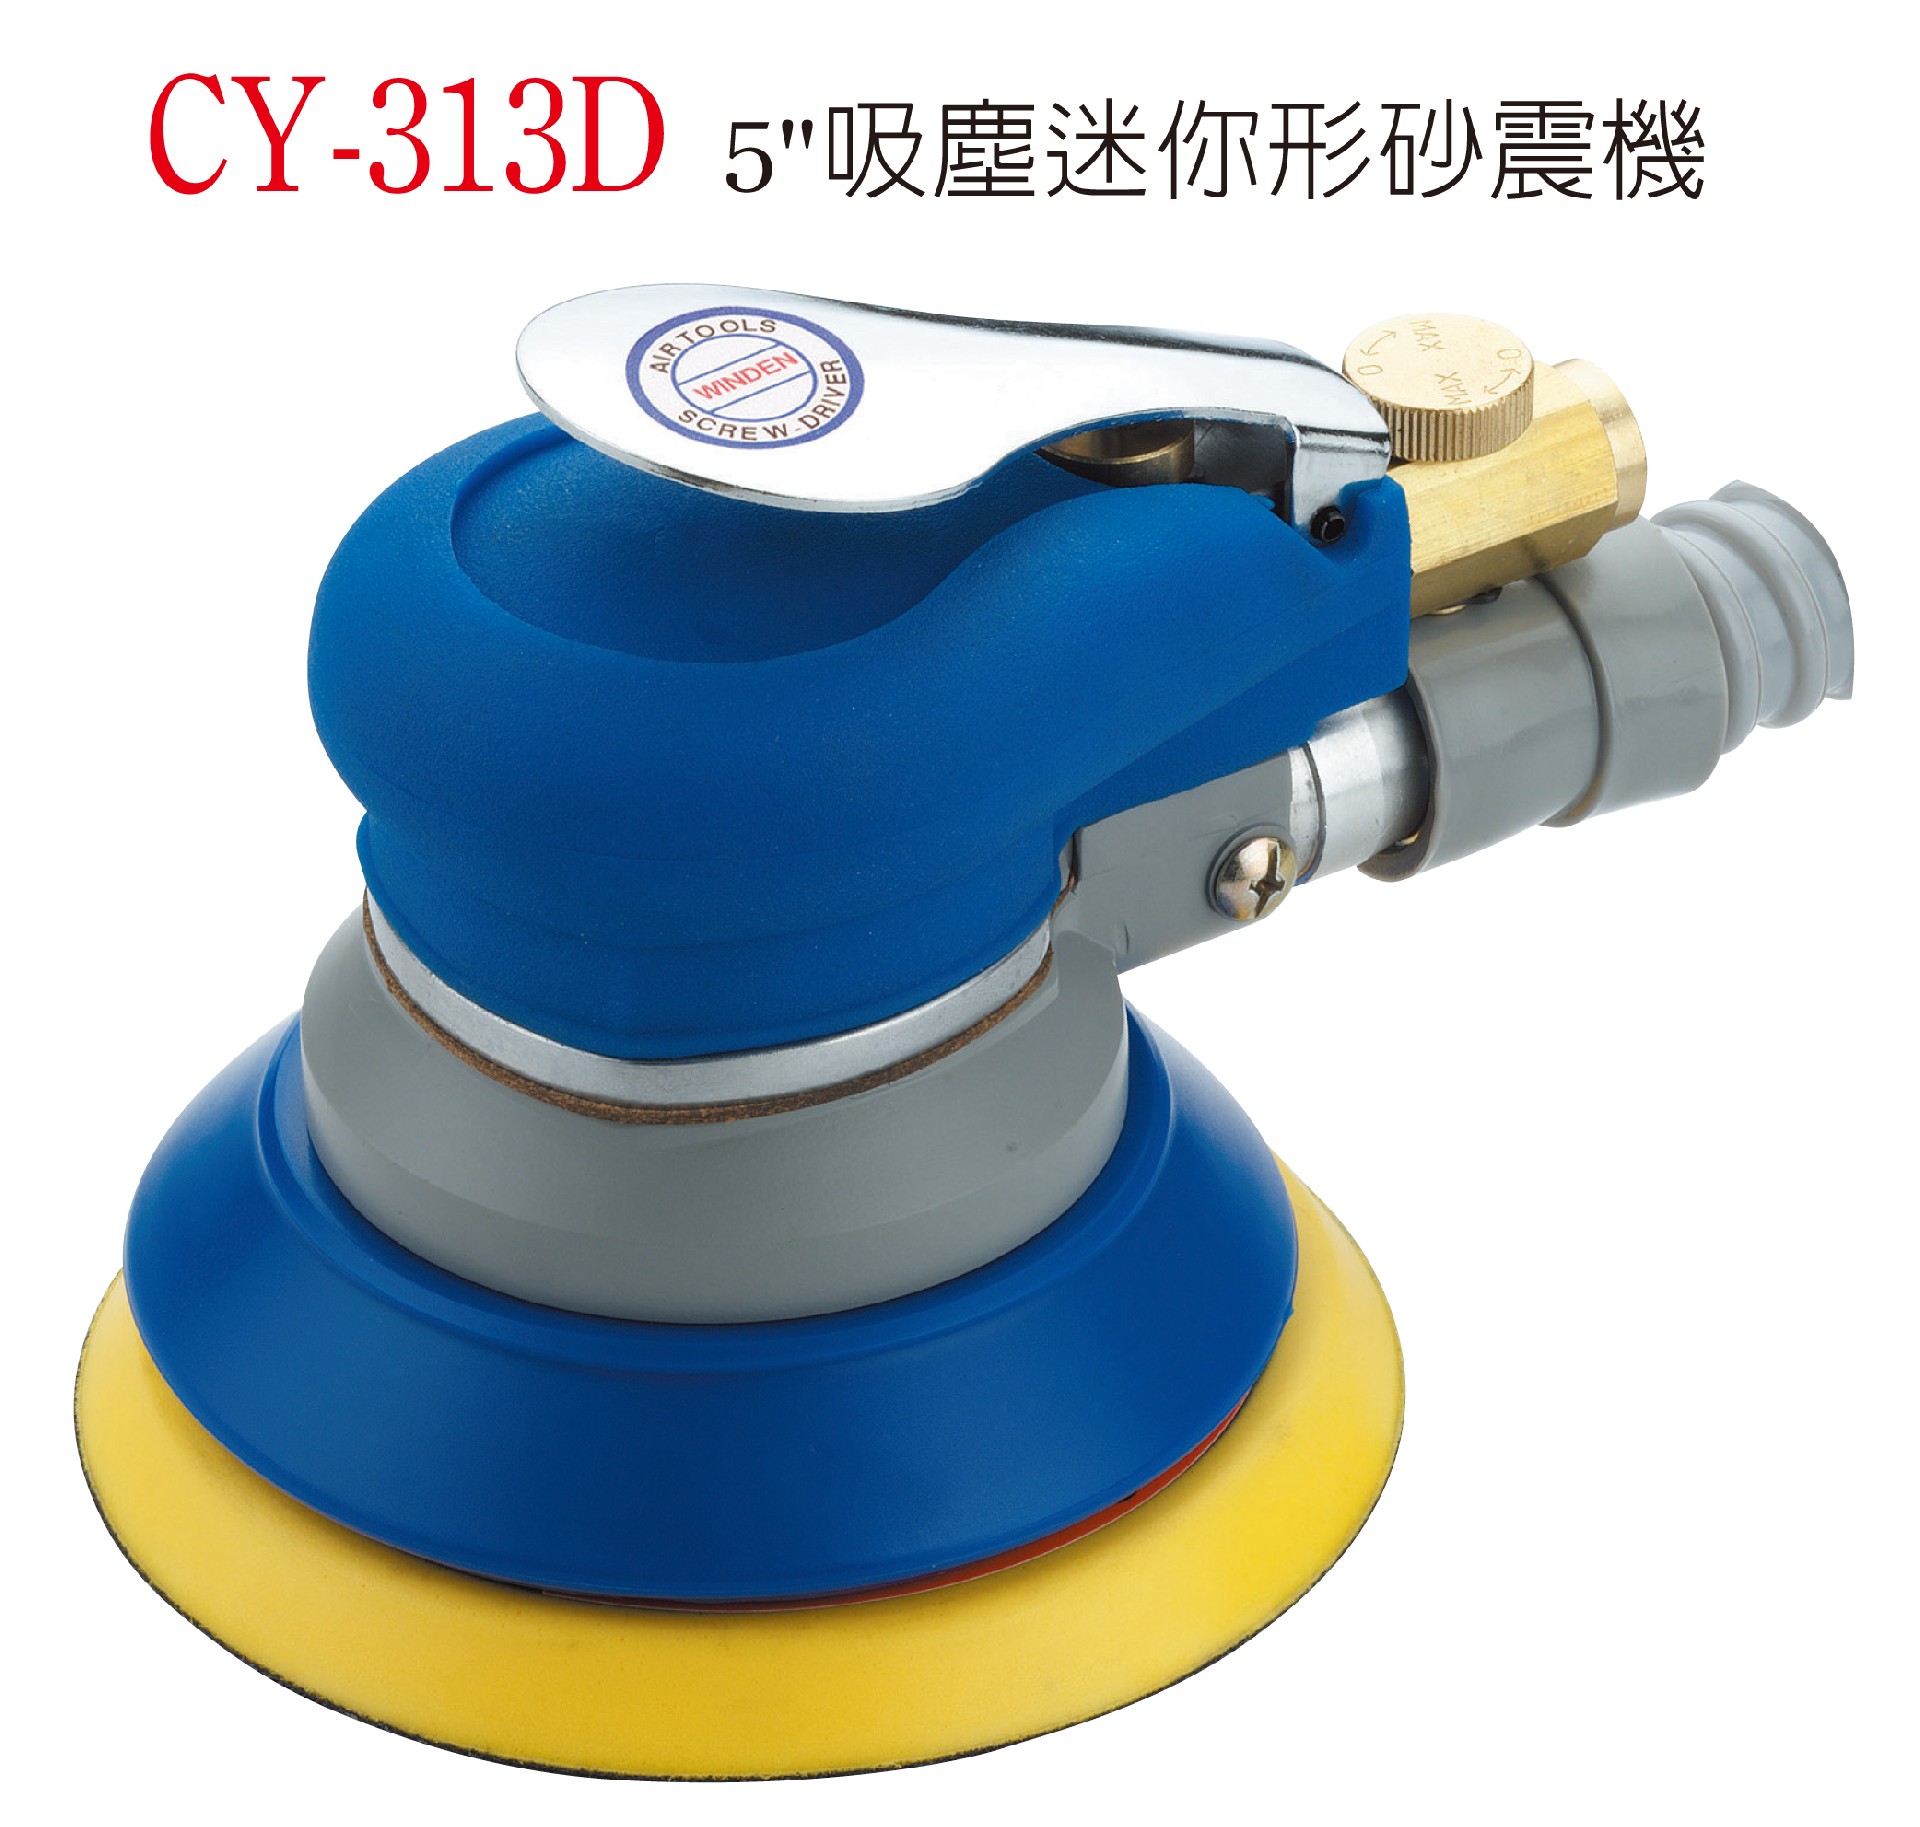 CY-313D 吸塵迷你形砂震機 .jpg